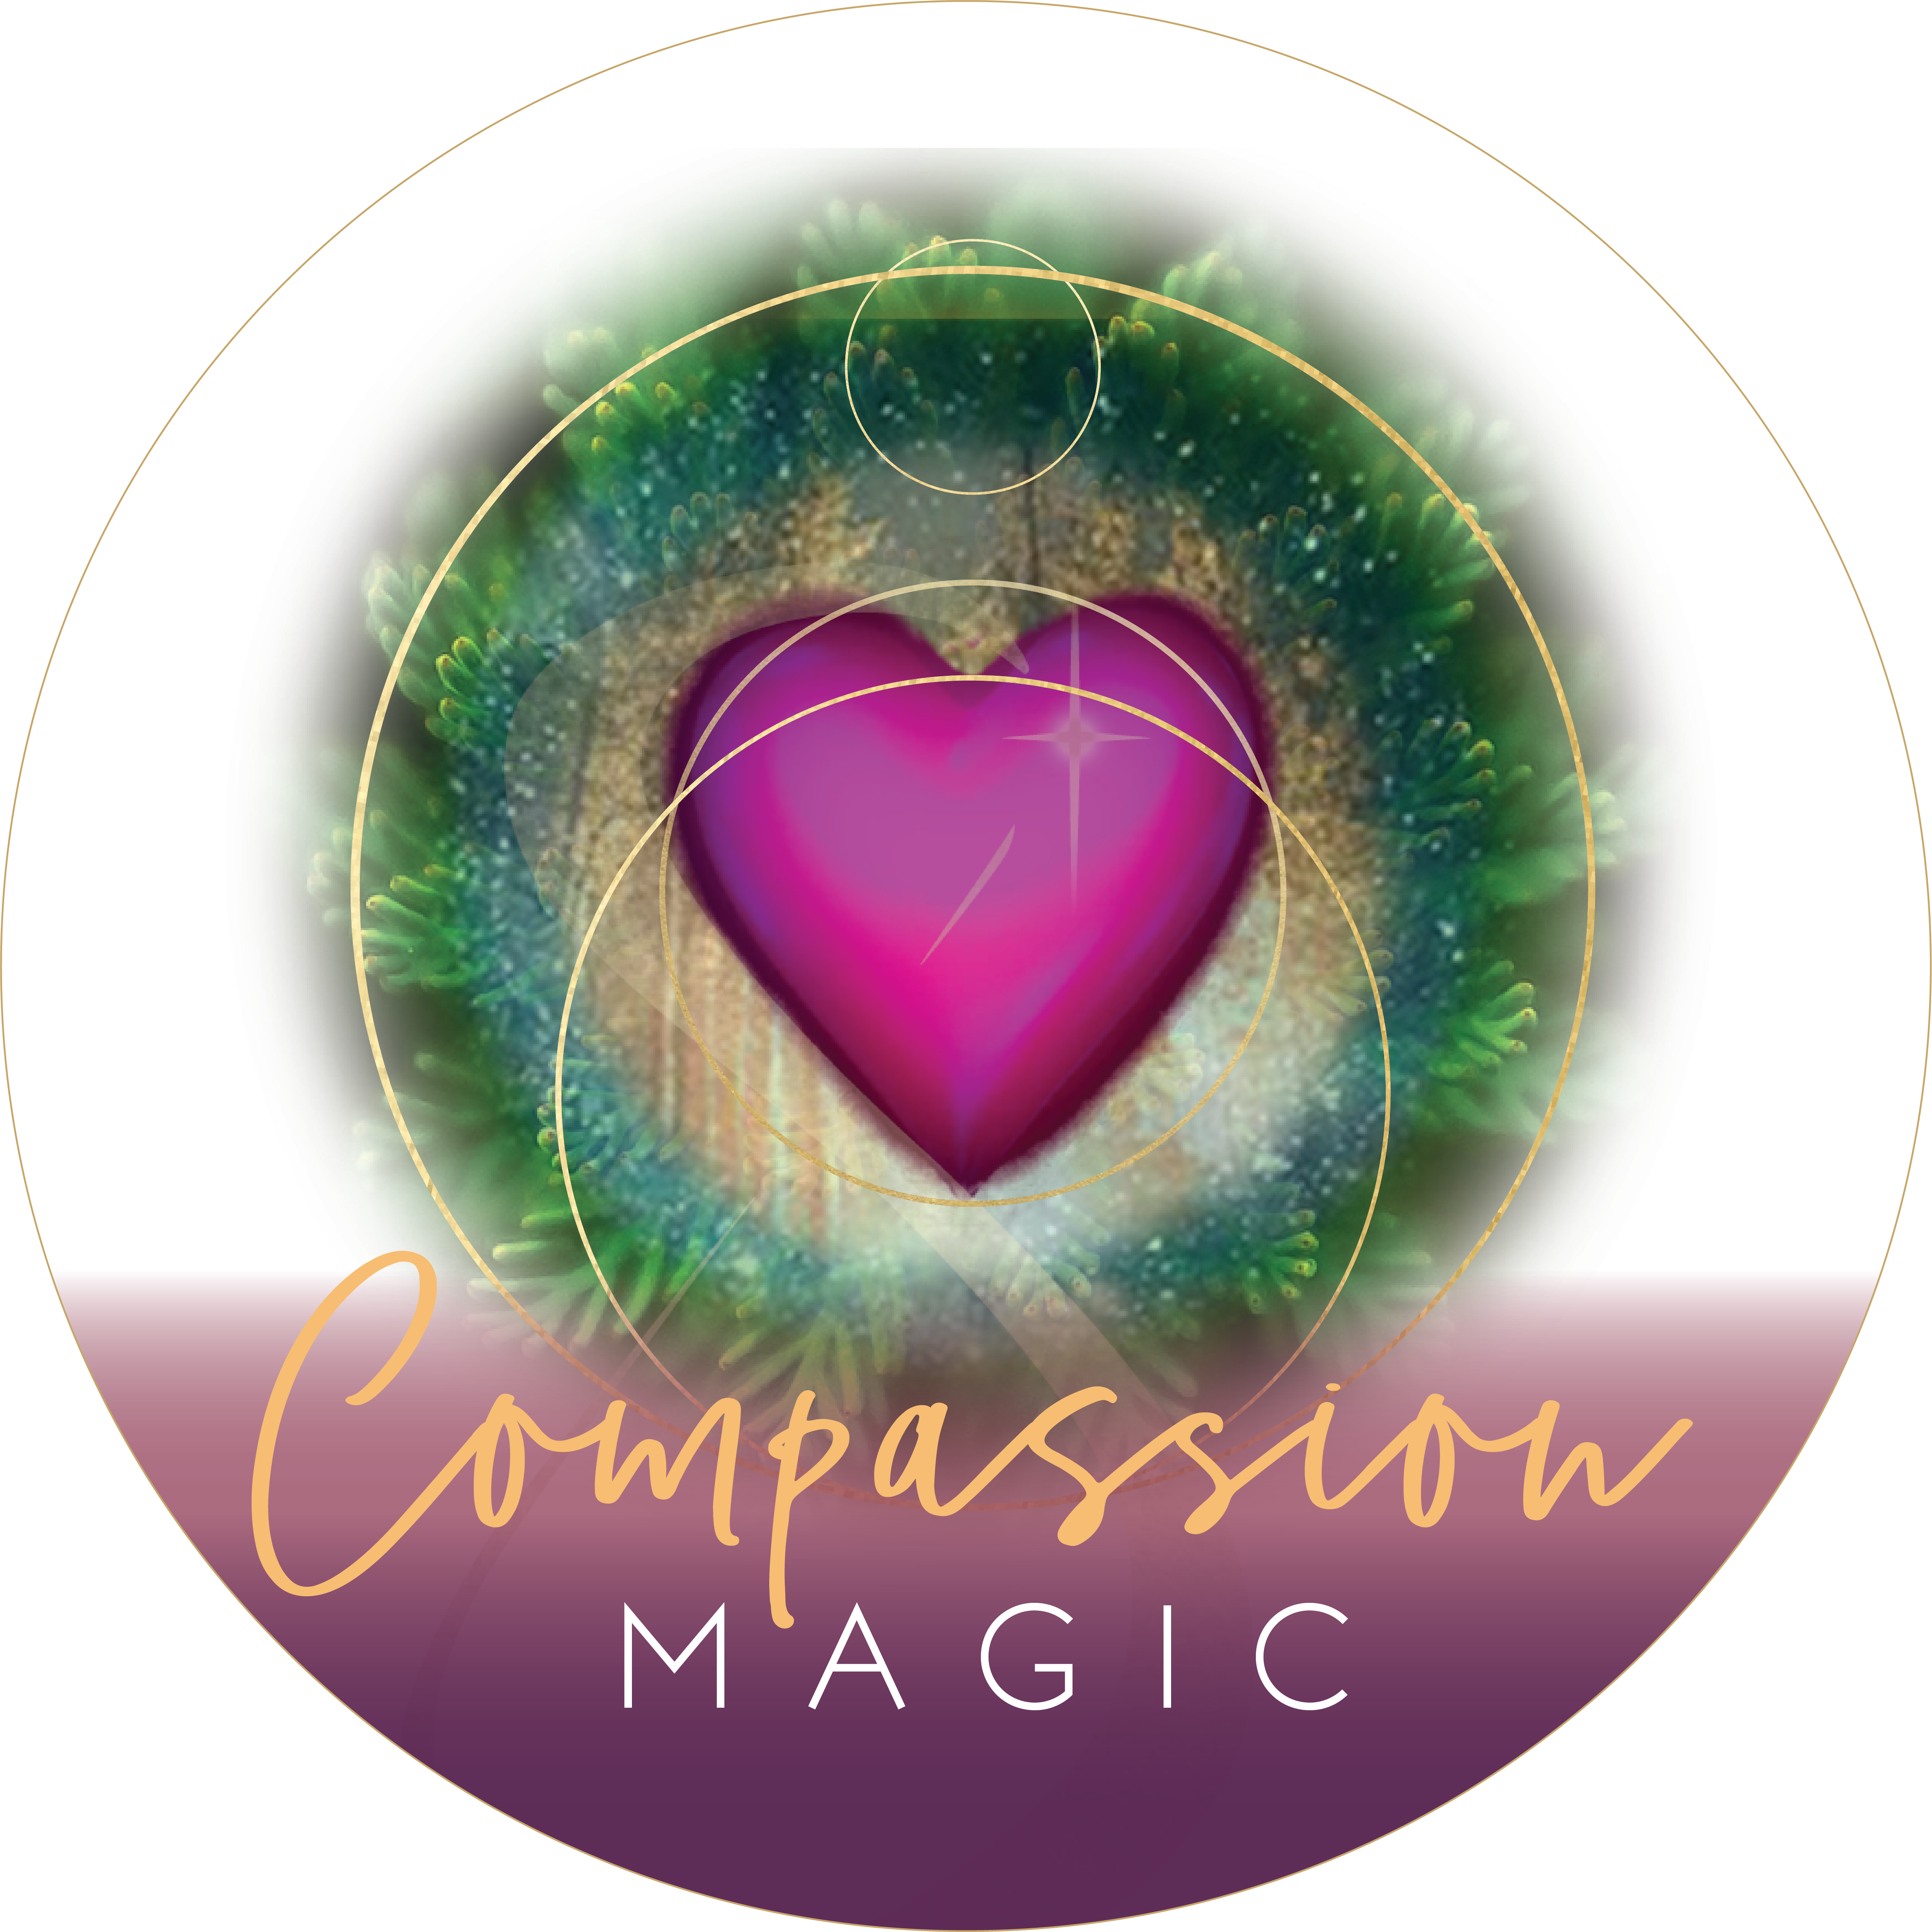 Compassion Magic